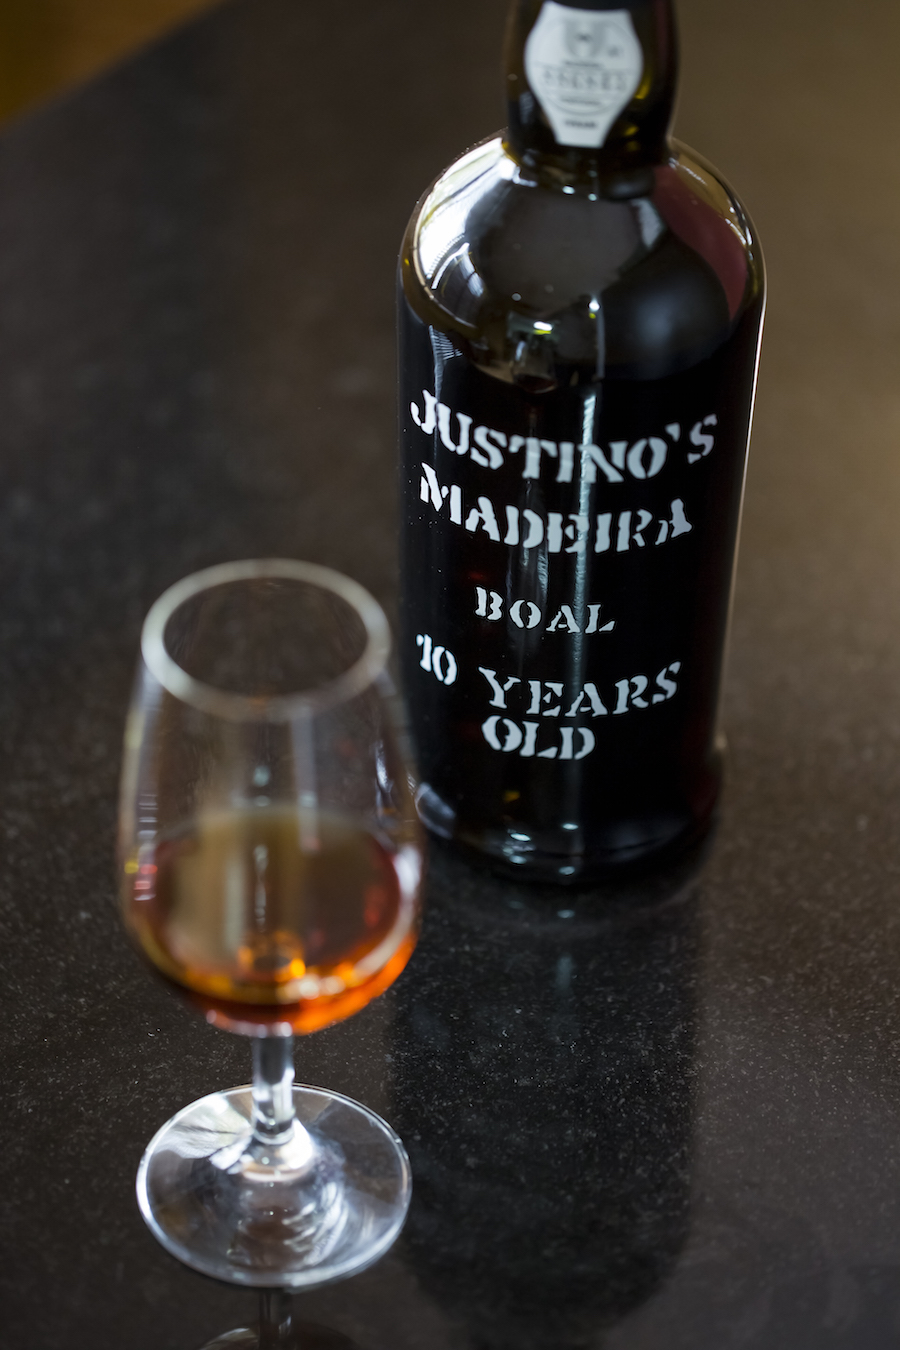 Justino's er en af de "store" producenter på Madeira, og de gør det rigtig godt. 